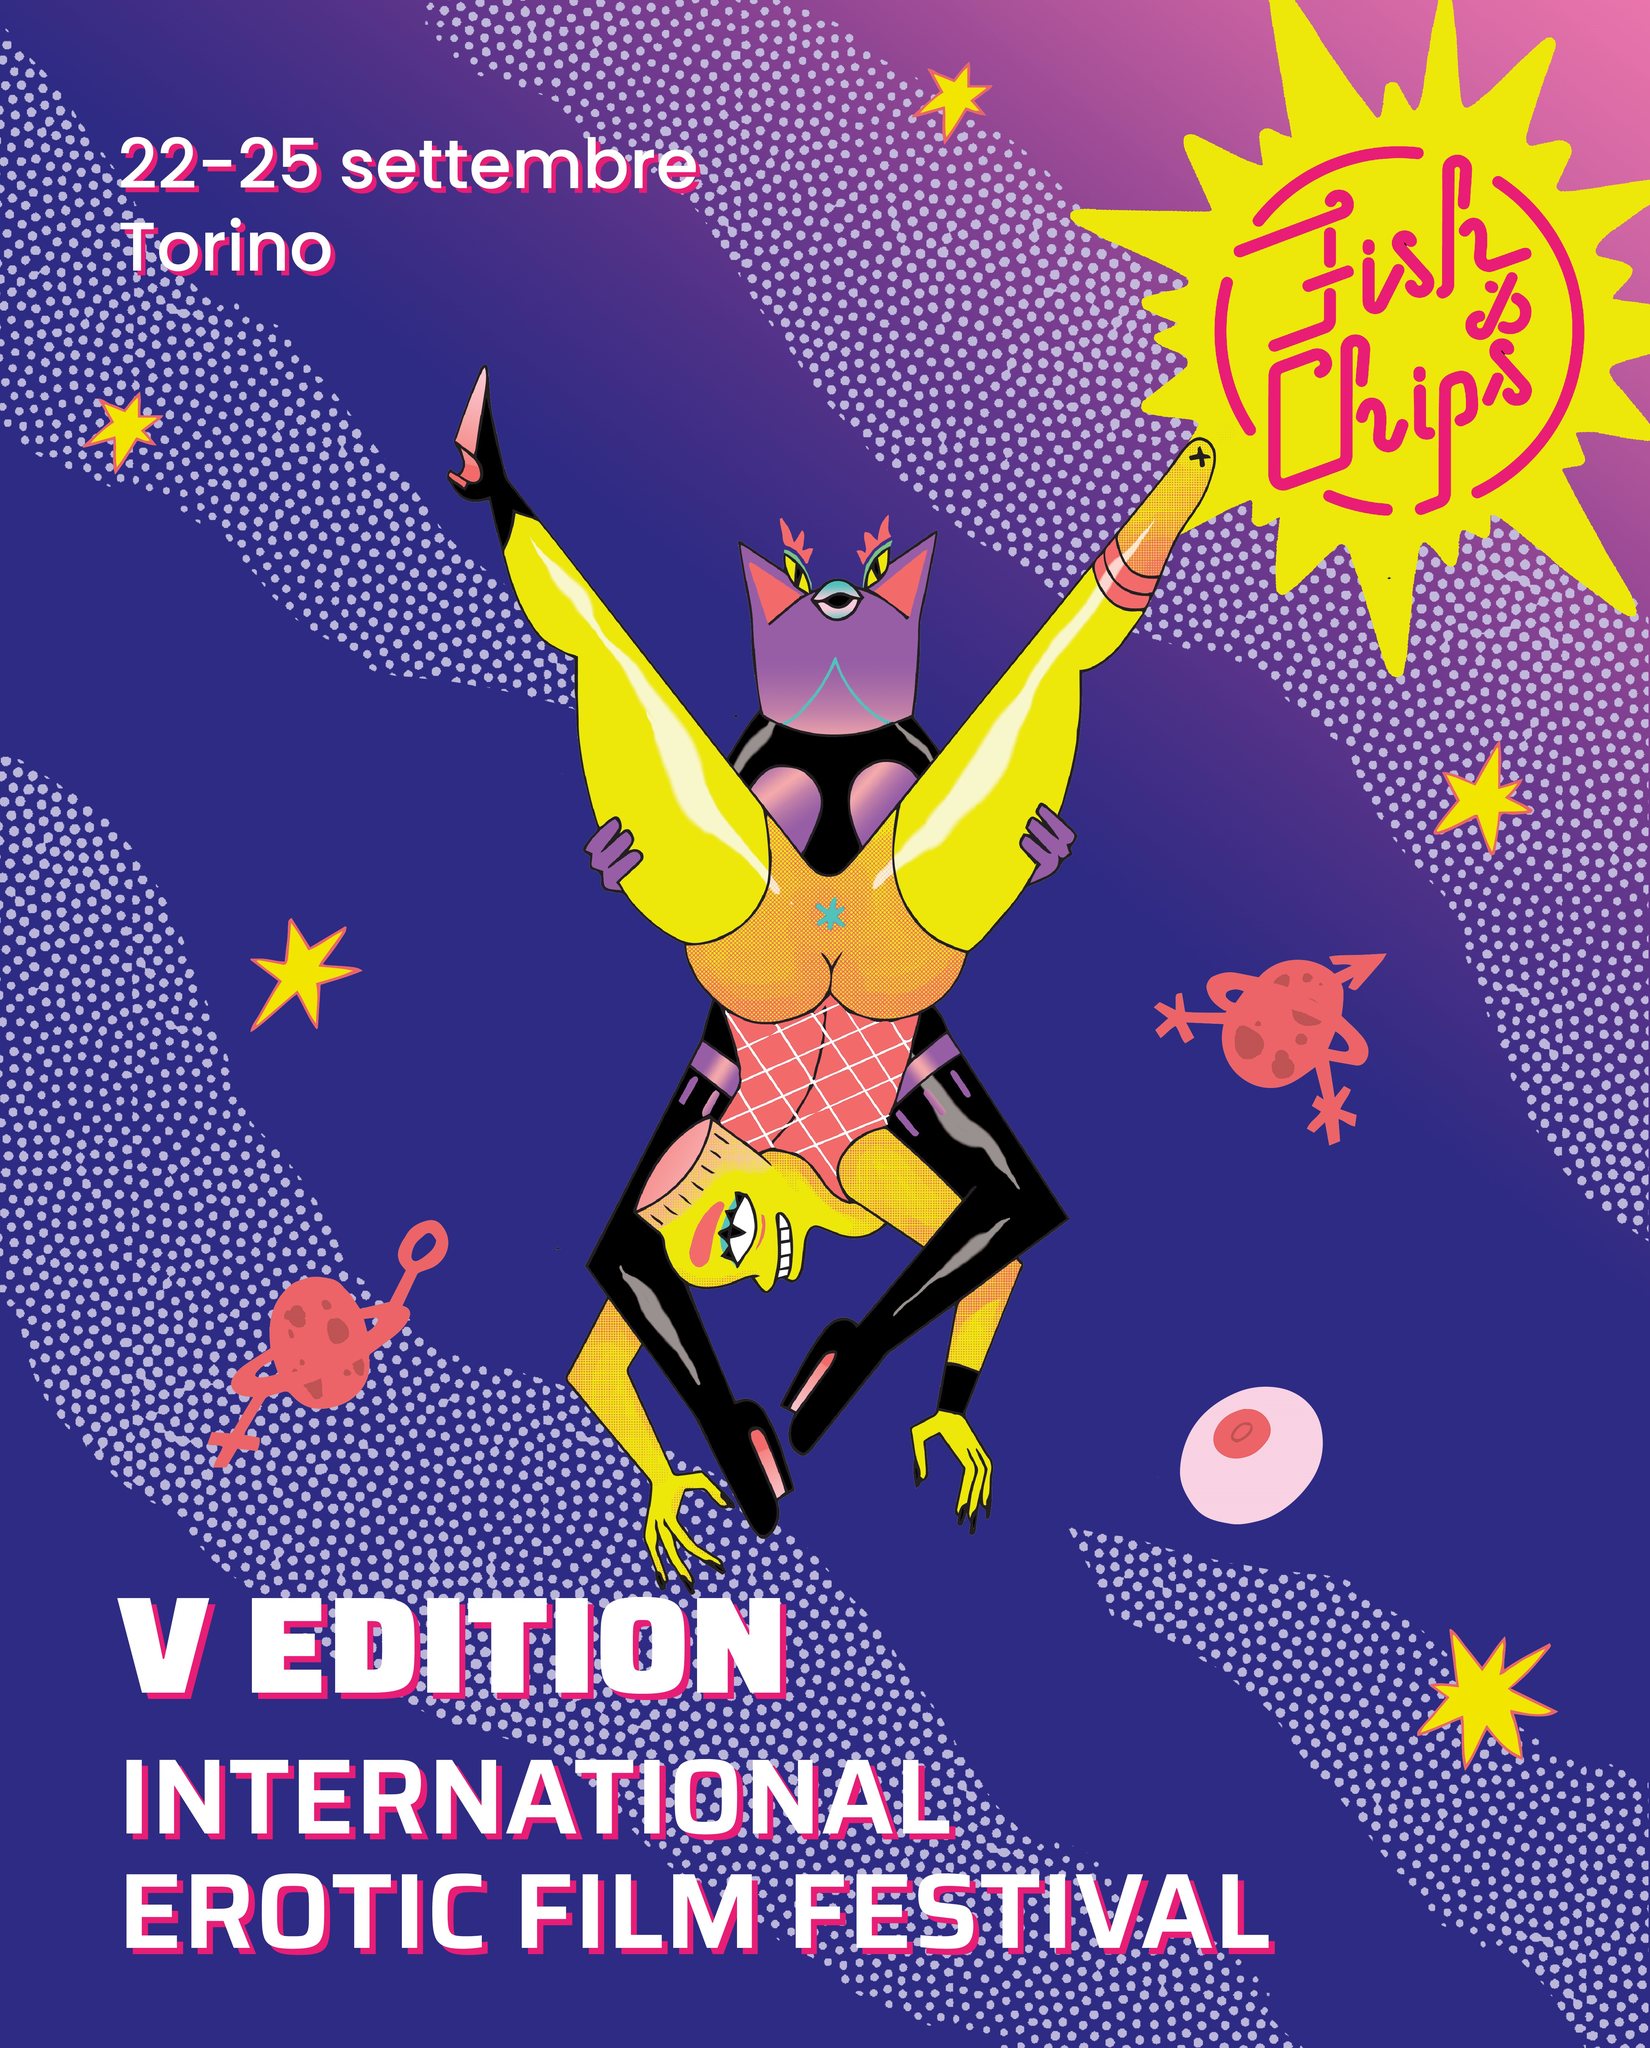 A Torino torna il festival del cinema dedicato all’eros e alla sessualità